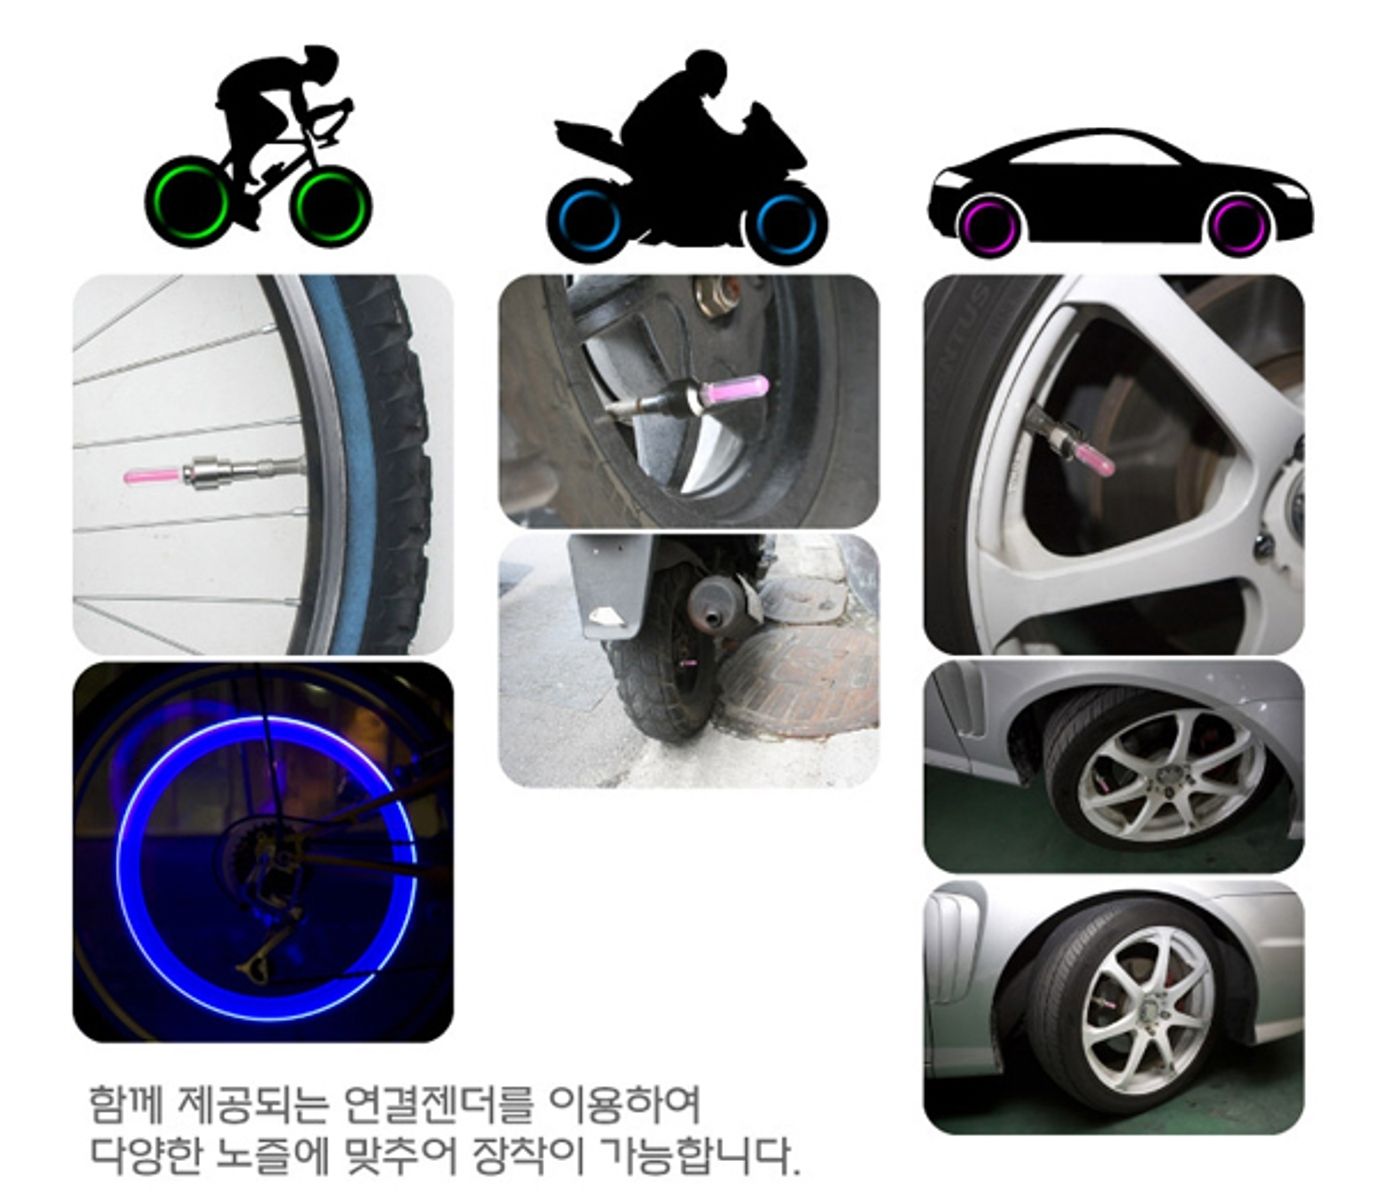 LED Valve Cap Bike Wheel Lights (4 pcs)